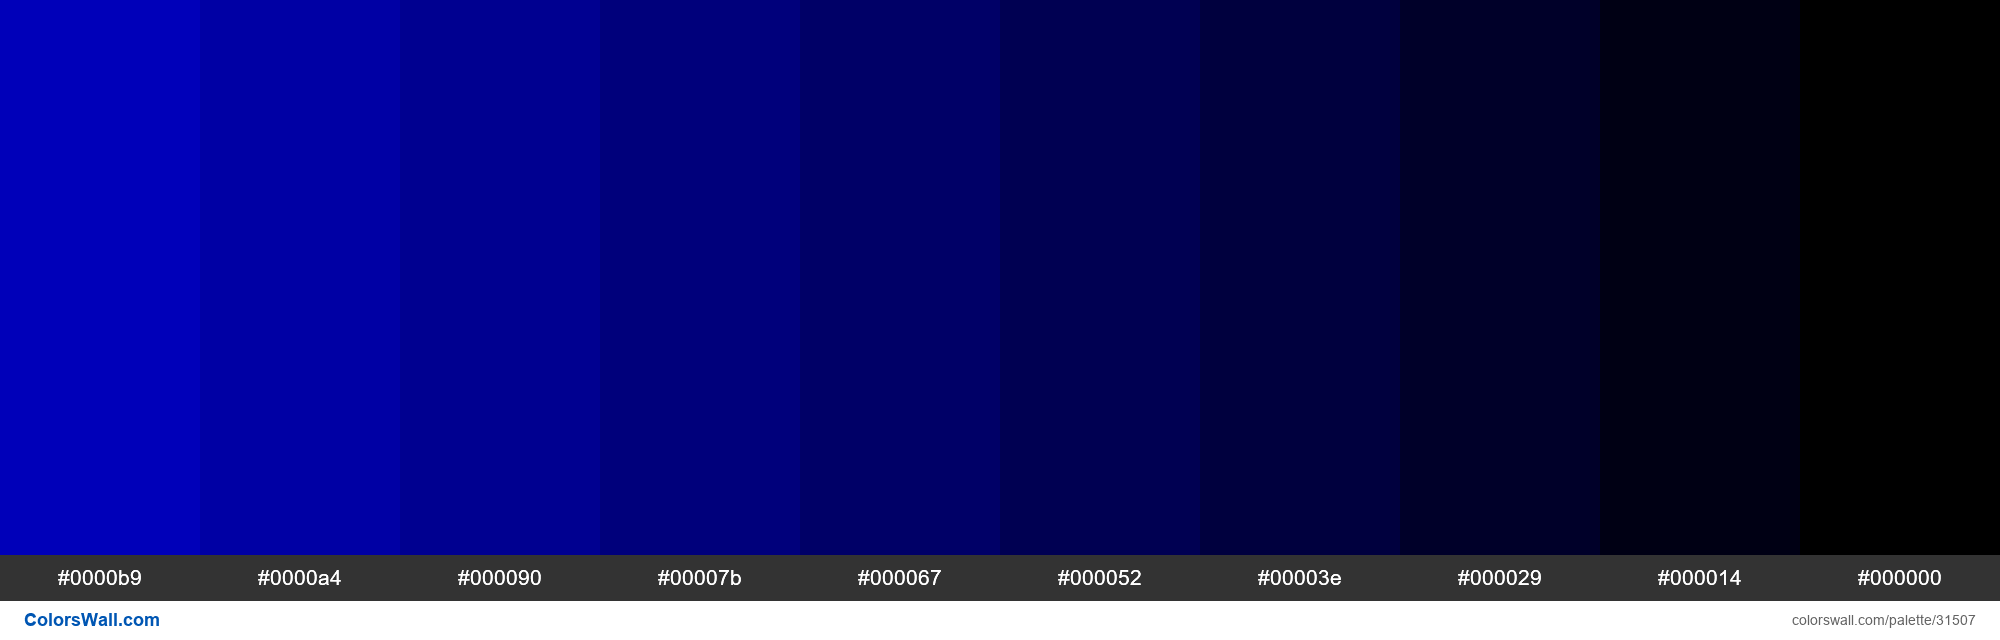 Shades X11 color Medium Blue #0000CD hex - ColorsWall